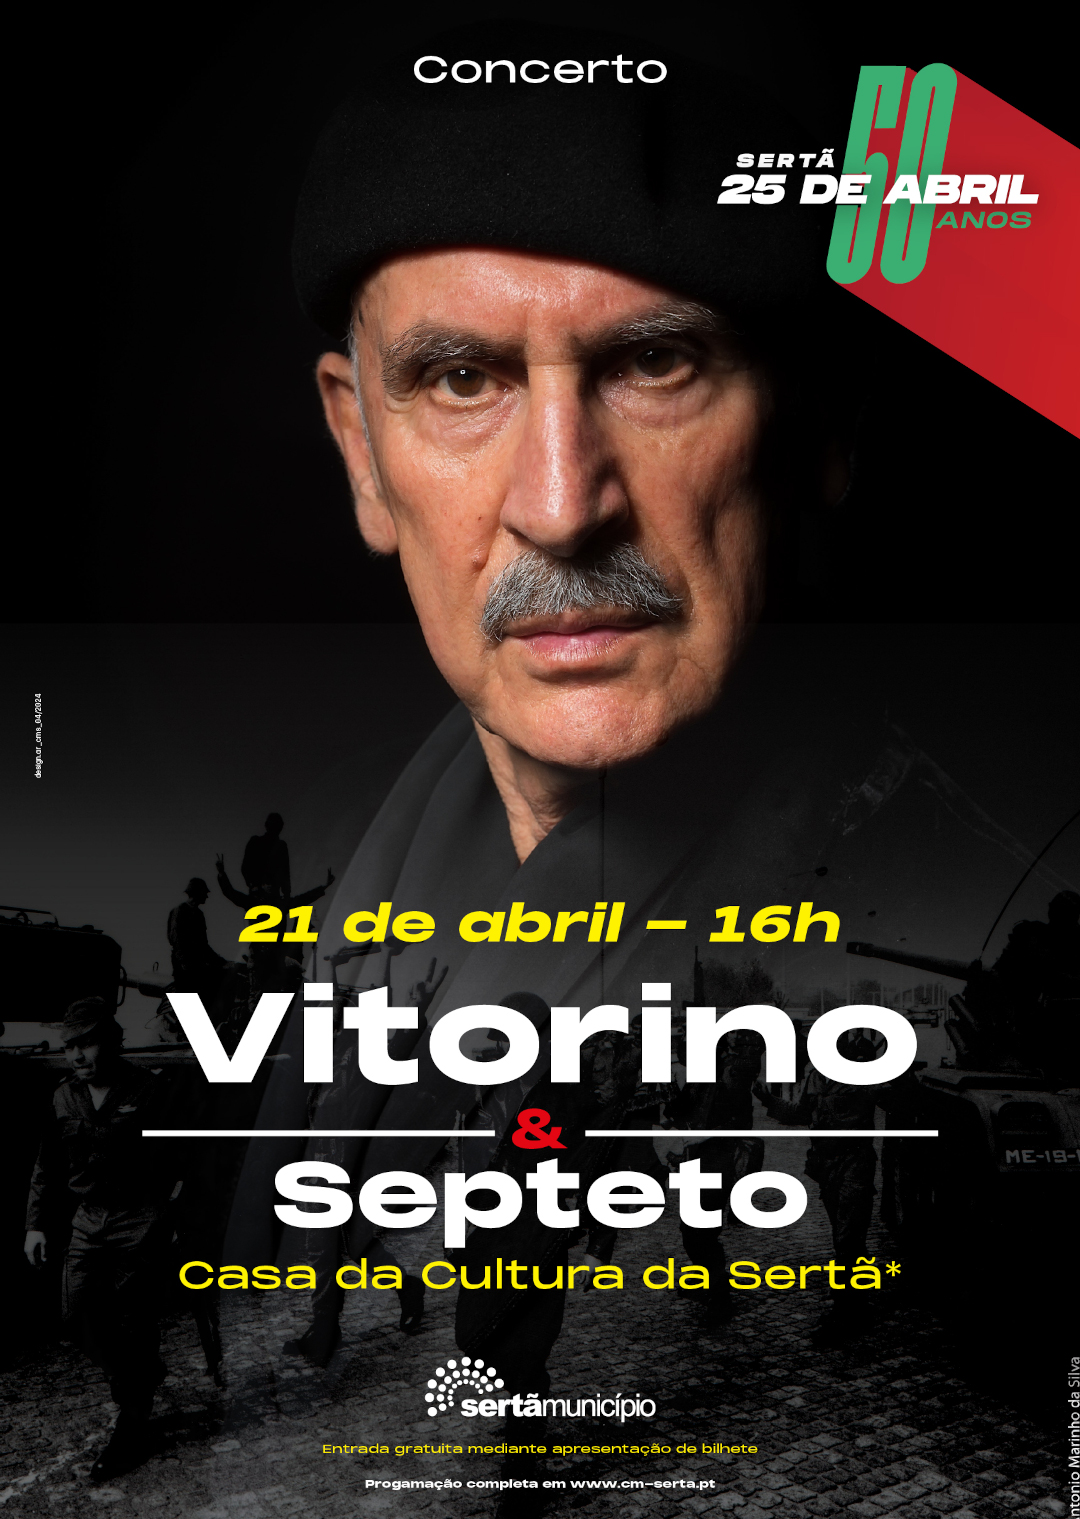 Capa Oficial do Evento Vitorino & Septeto